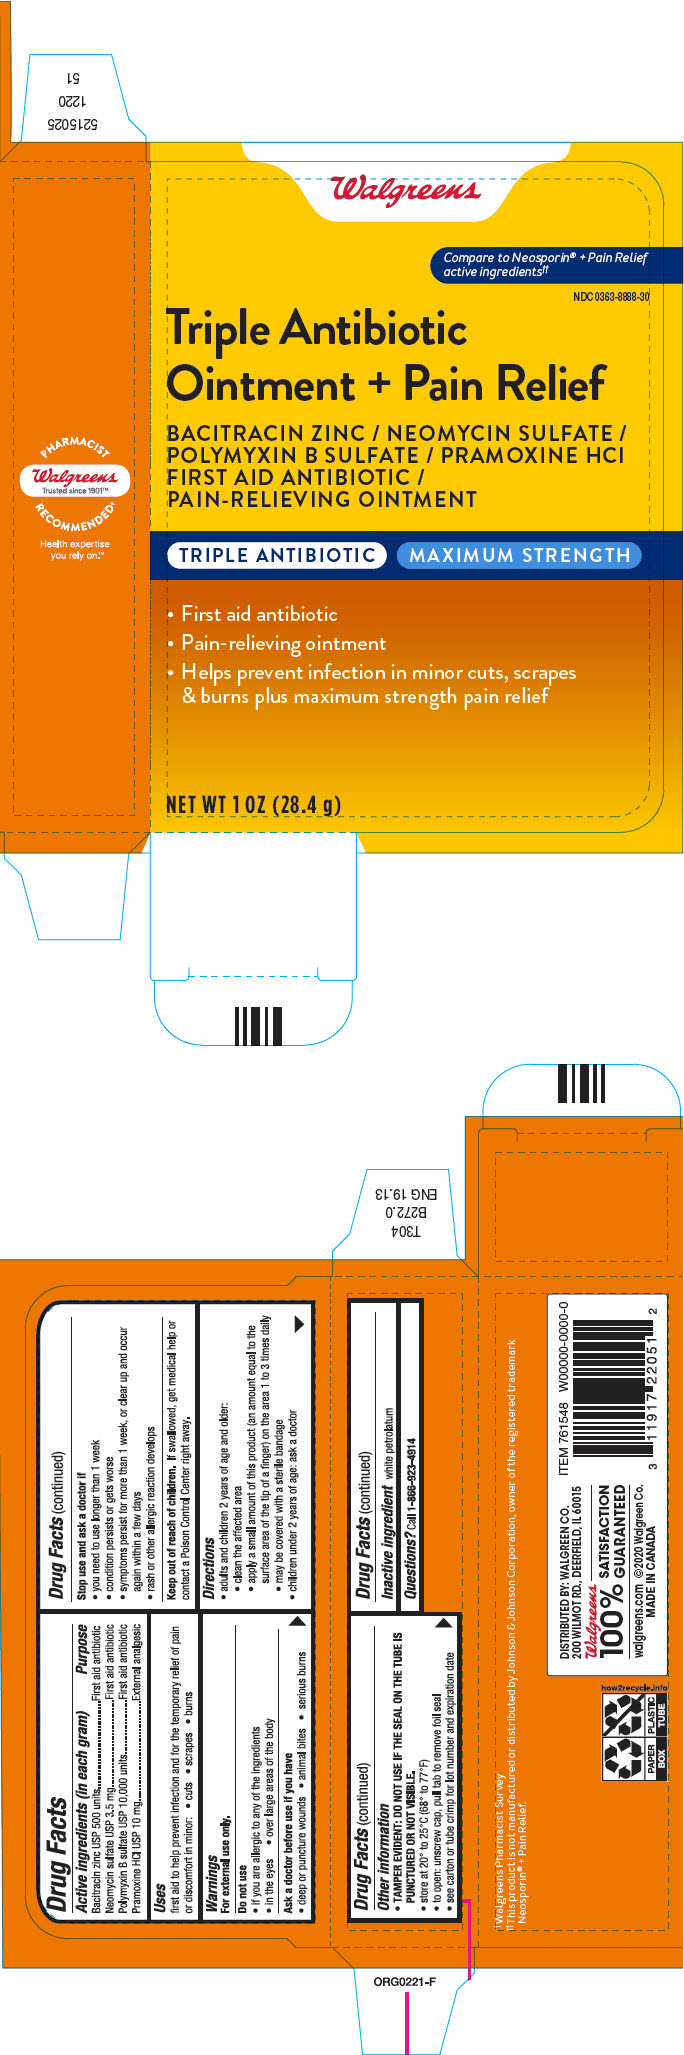 PRINCIPAL DISPLAY PANEL - 28.4 g Tube Carton